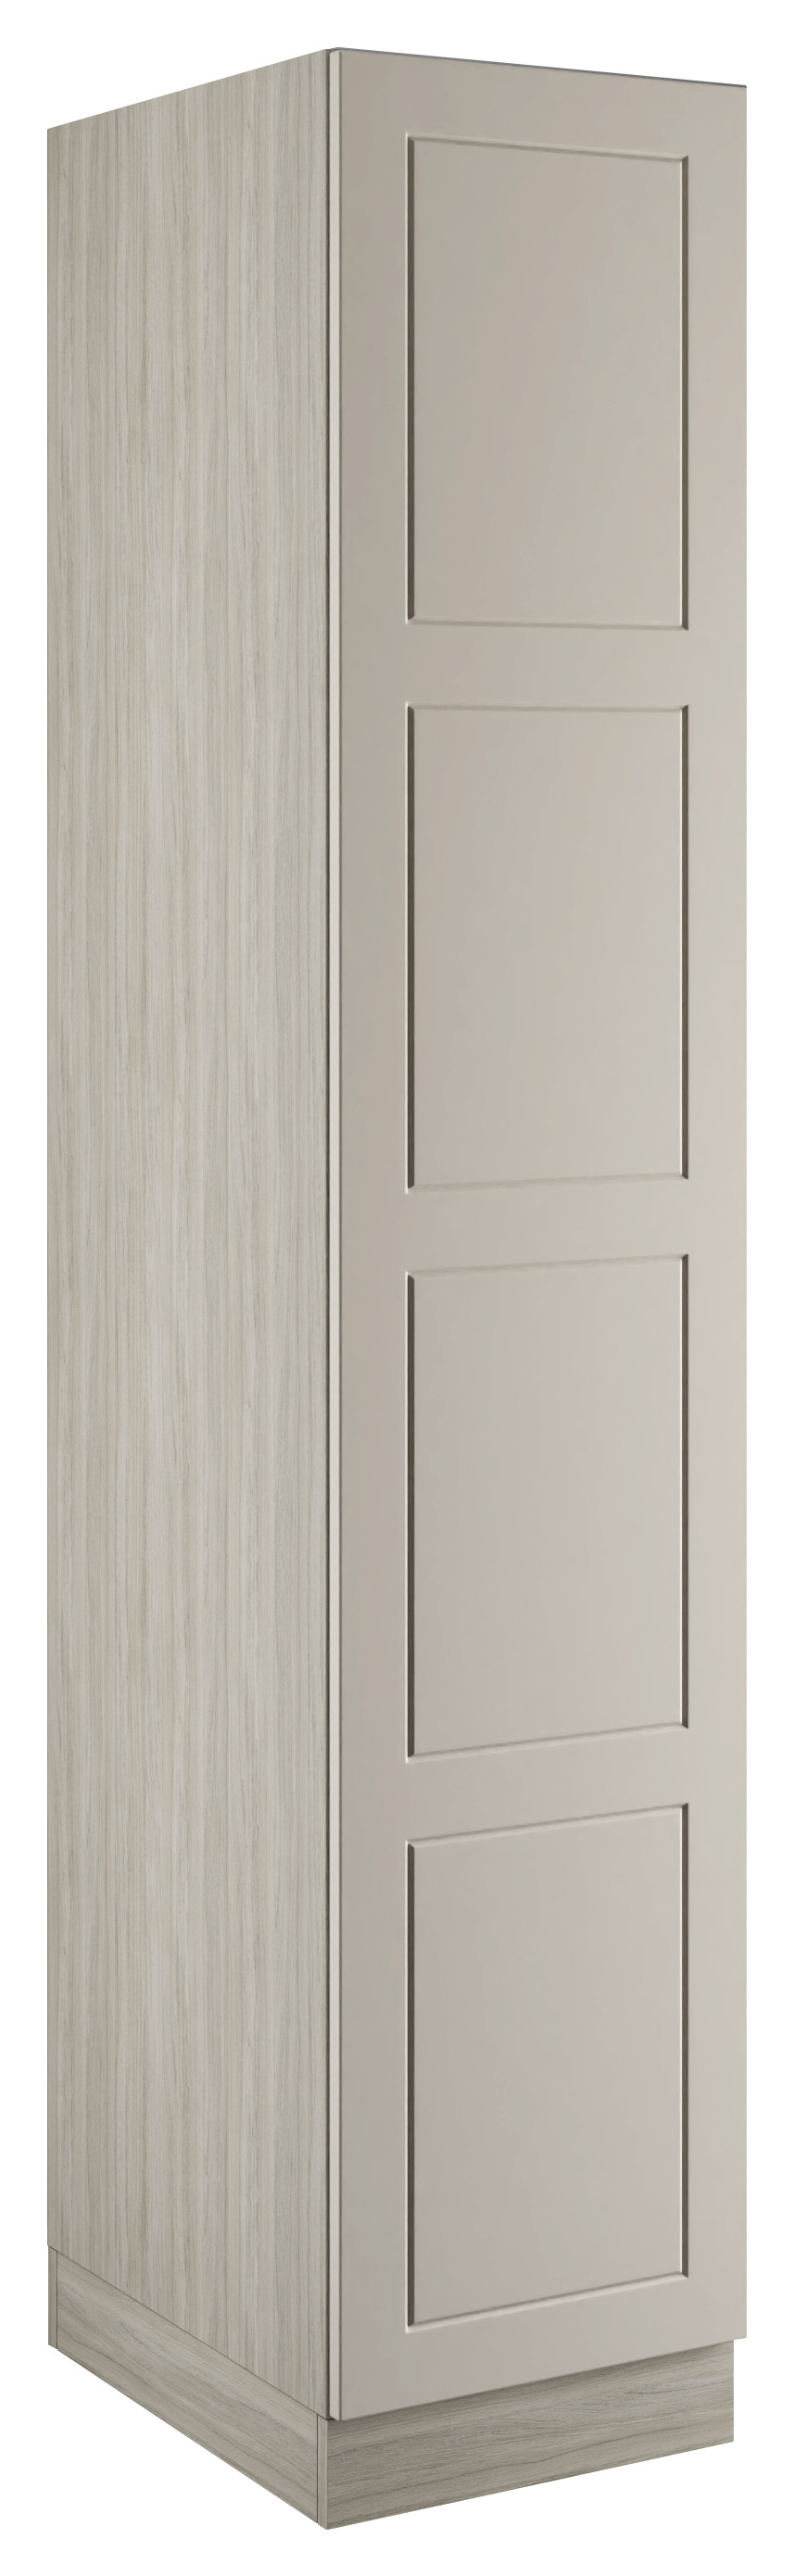 Bramham Taupe Grey Single Wardrobe with Single Rail - 450 x 2260 x 608mm